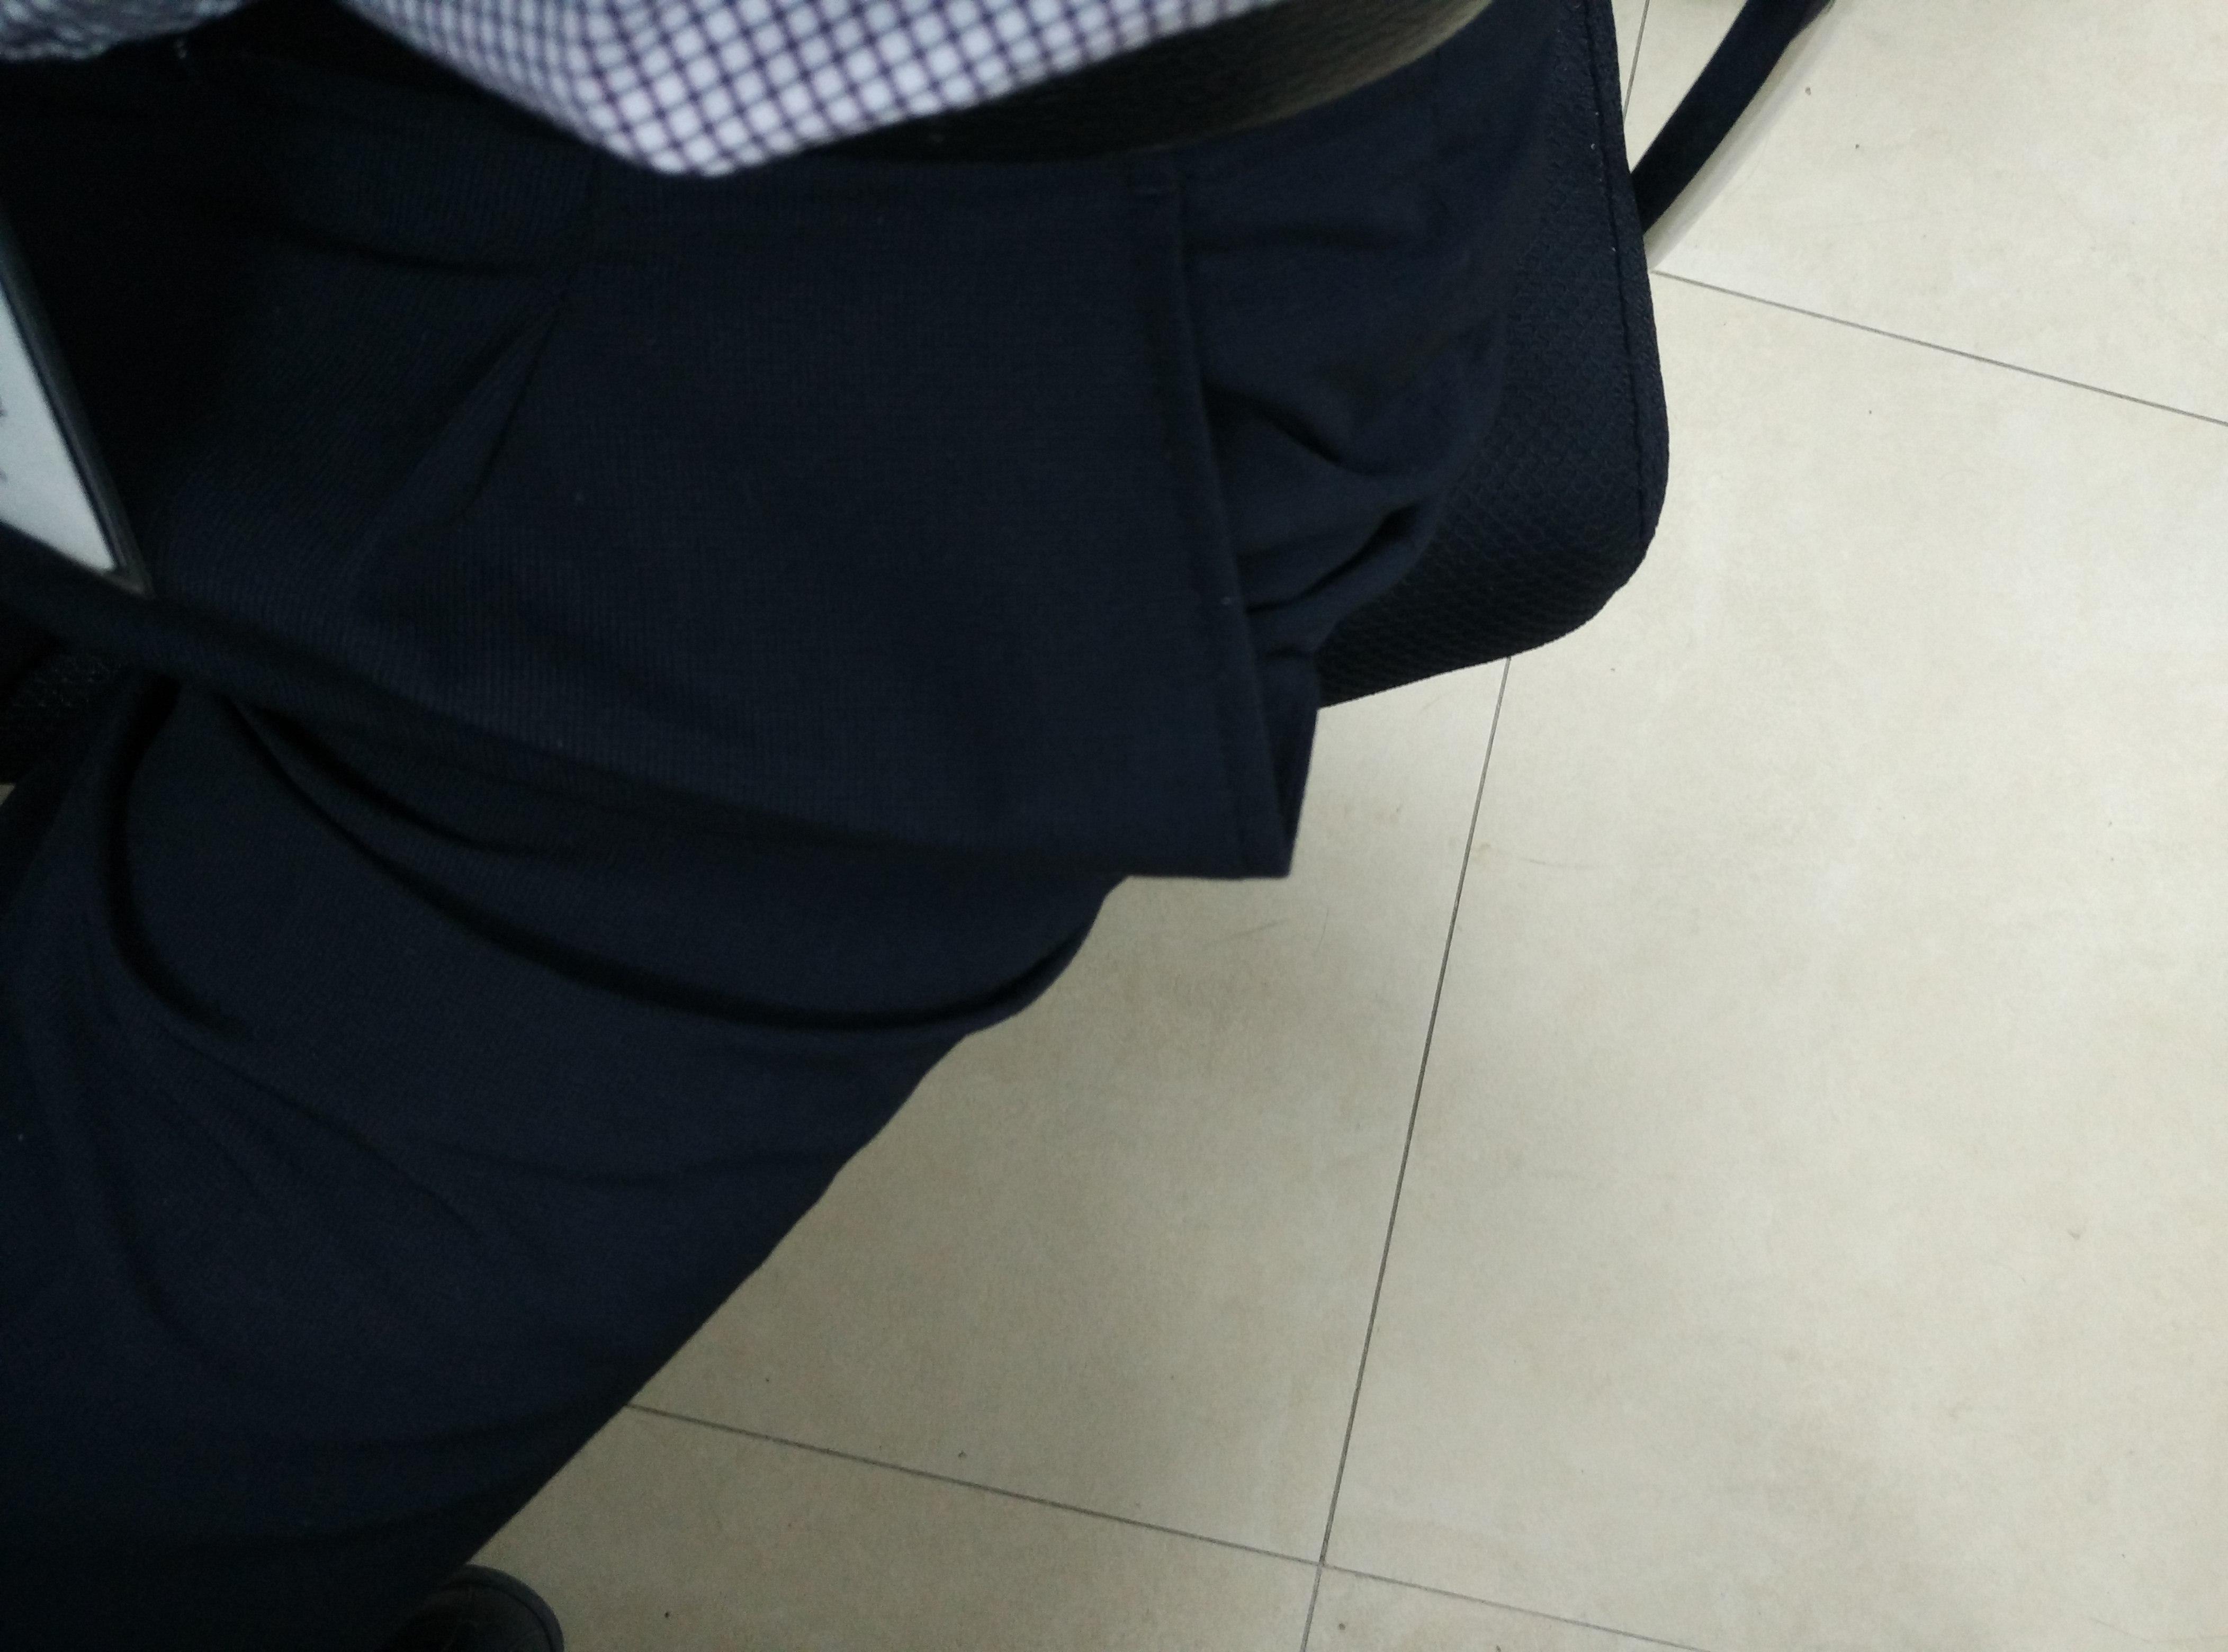 西裤口袋往外翘是什么原因?